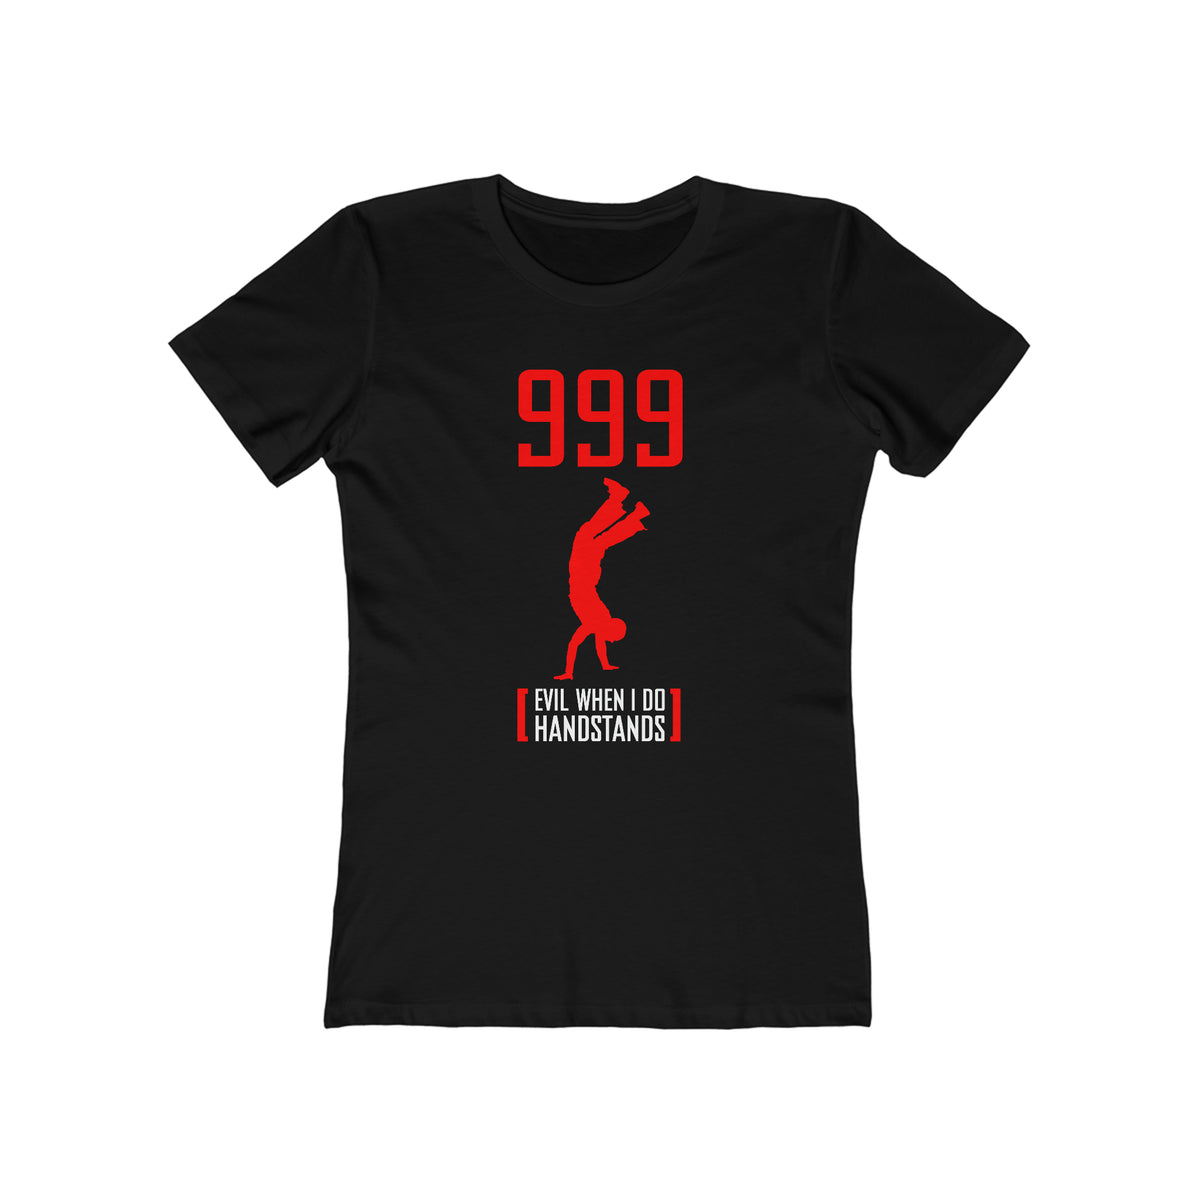 999 - Evil When I Do Handstands - Women’s T-Shirt